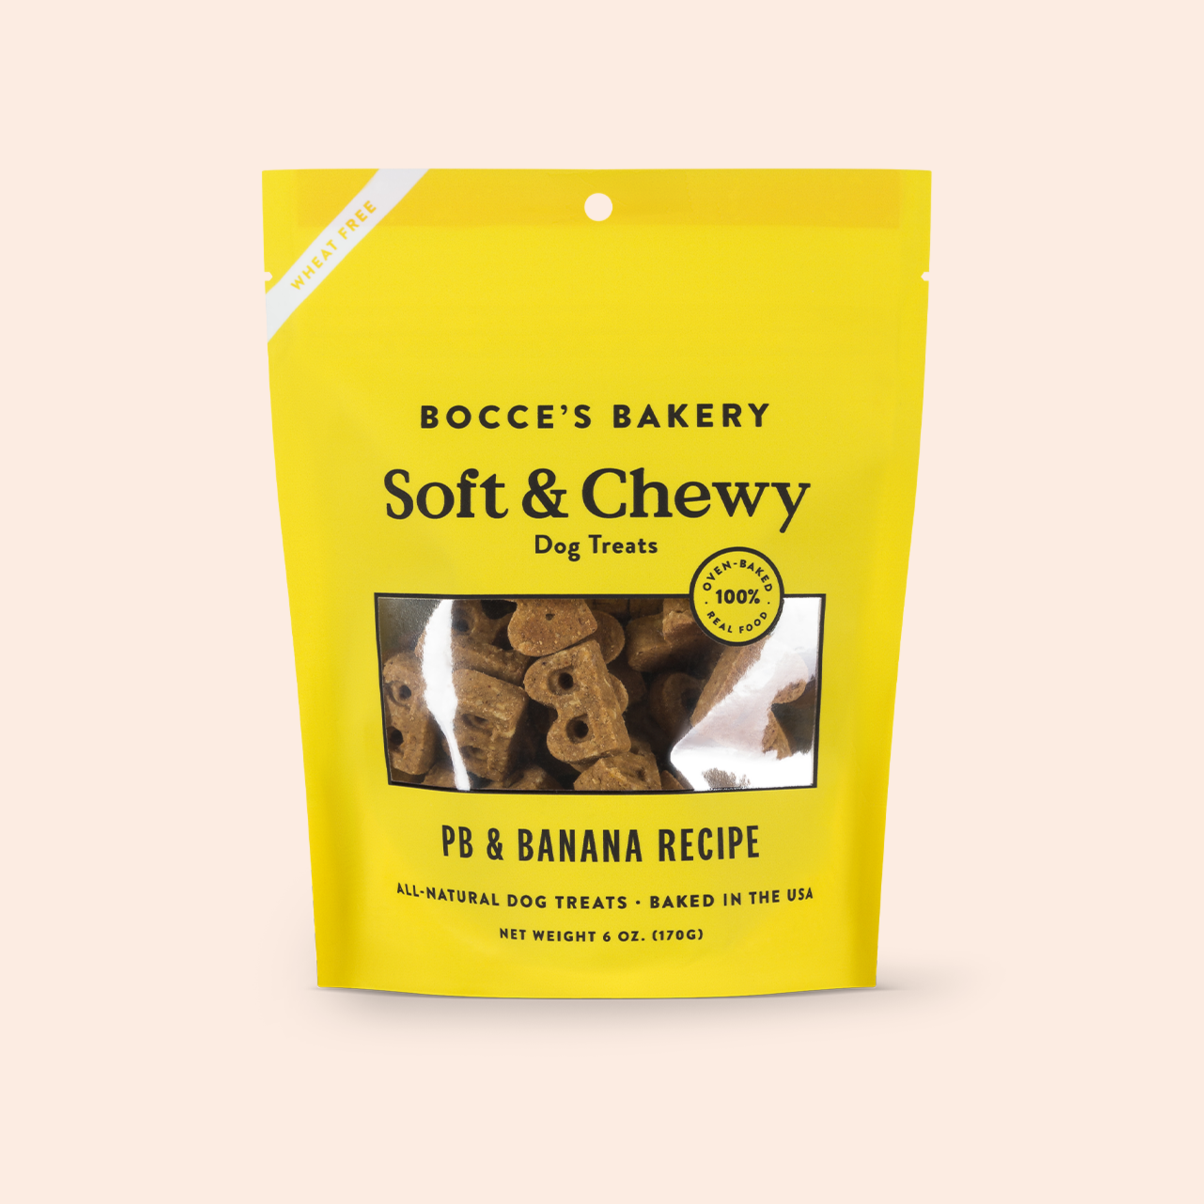 PB & Banana Recipe Soft & Chewy Dog Treats